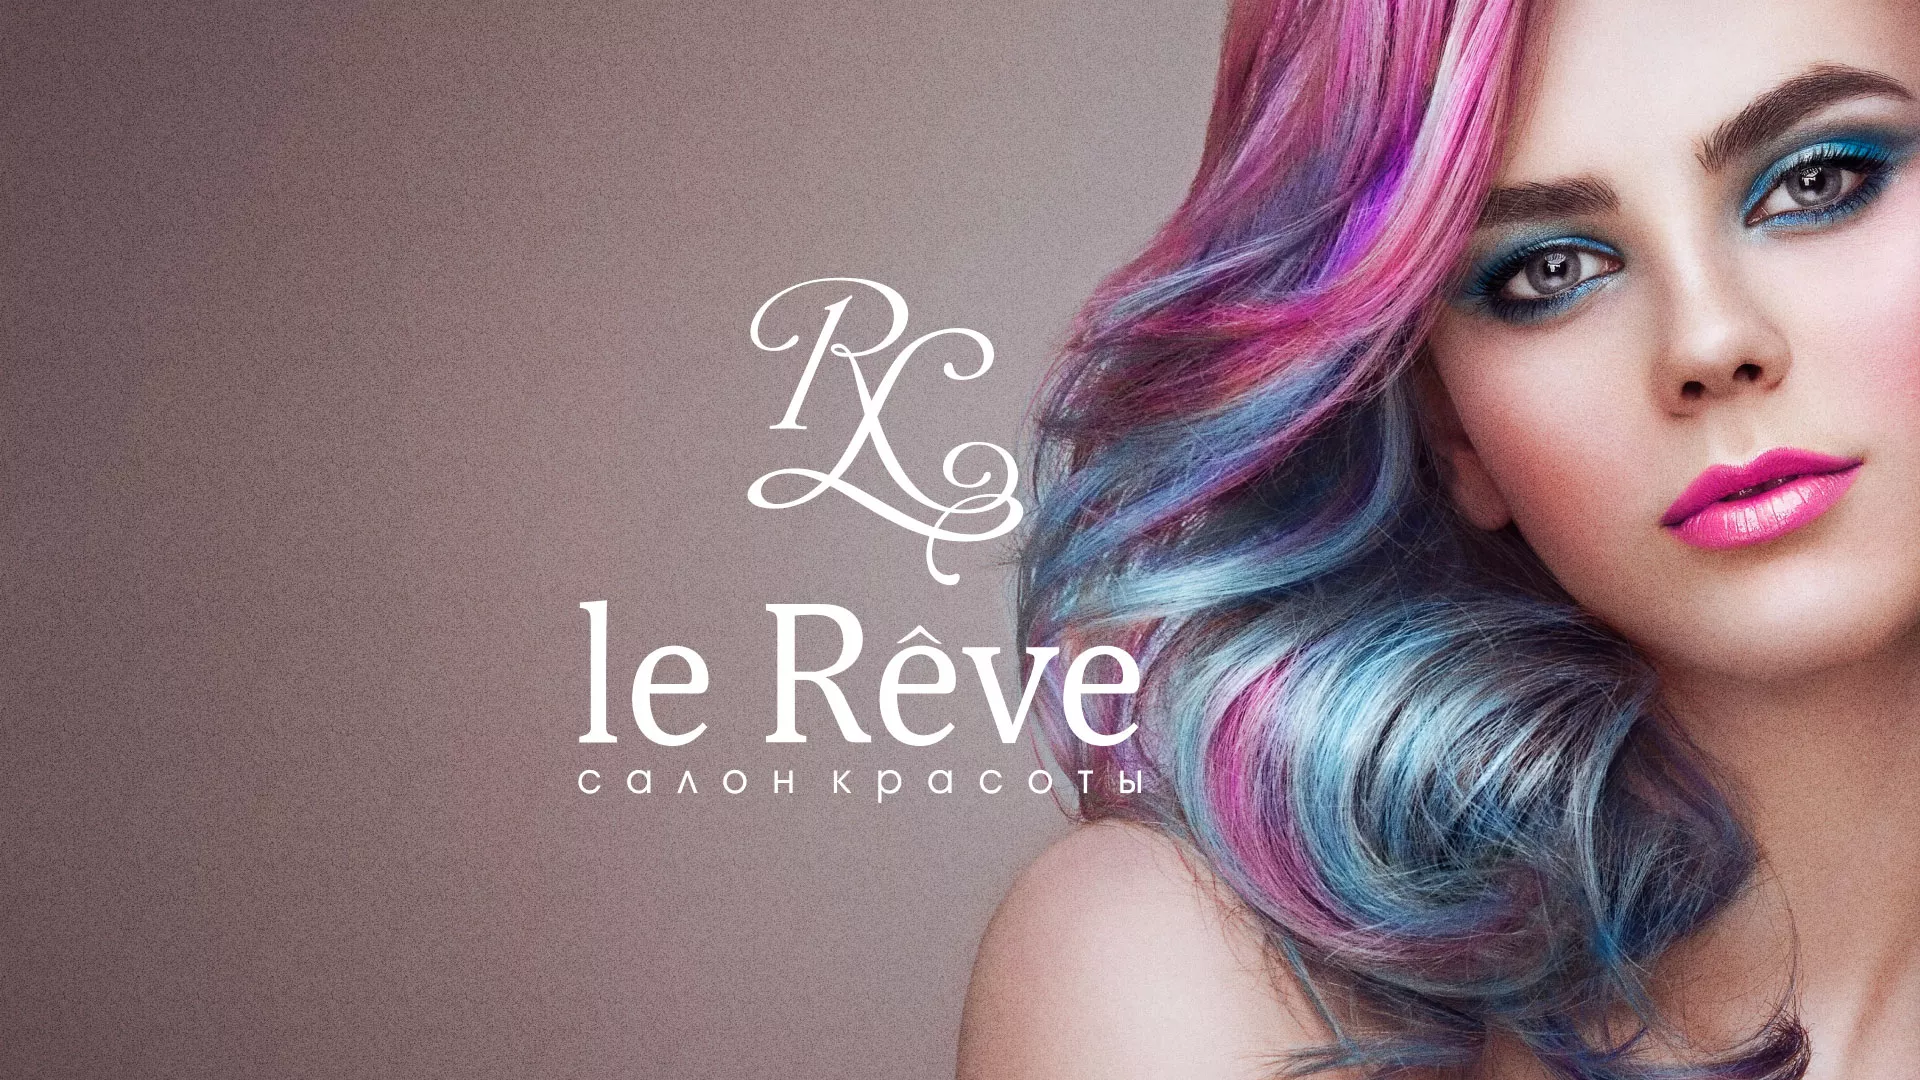 Создание сайта для салона красоты «Le Reve» в Грязях